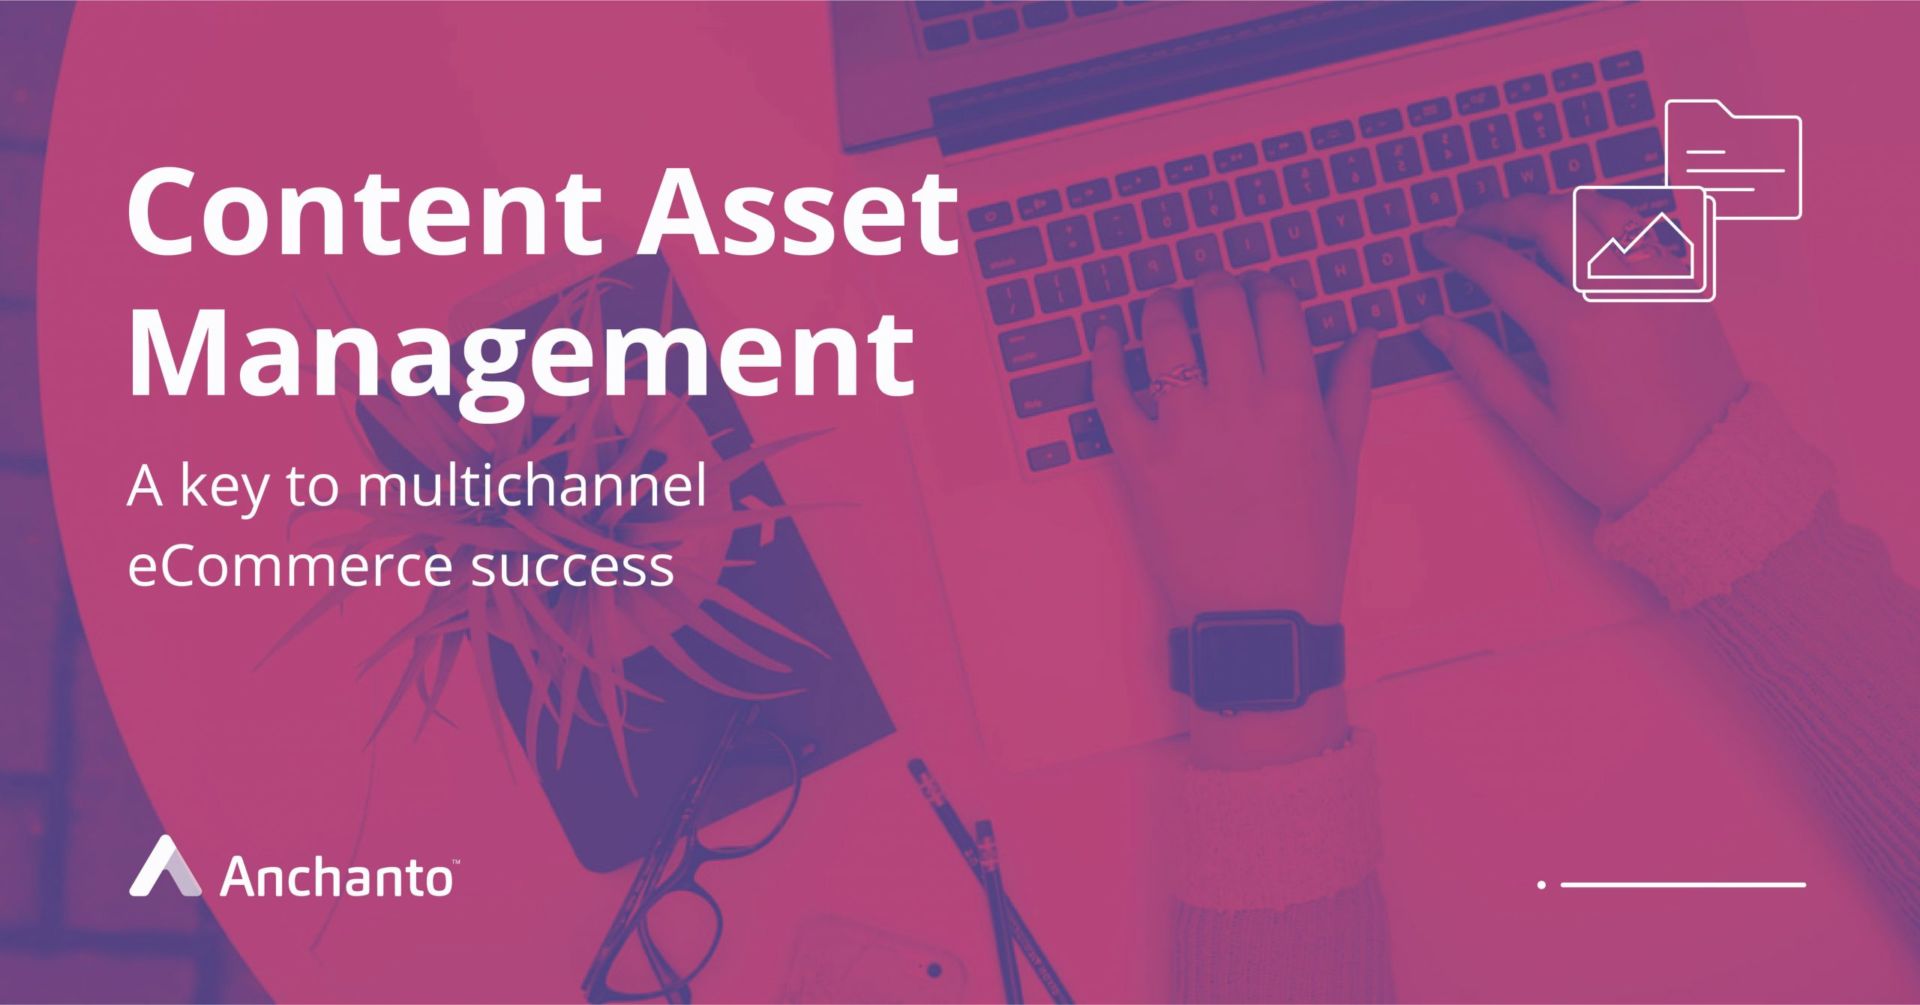 Content Asset Management: A key to multichannel E-commerce success